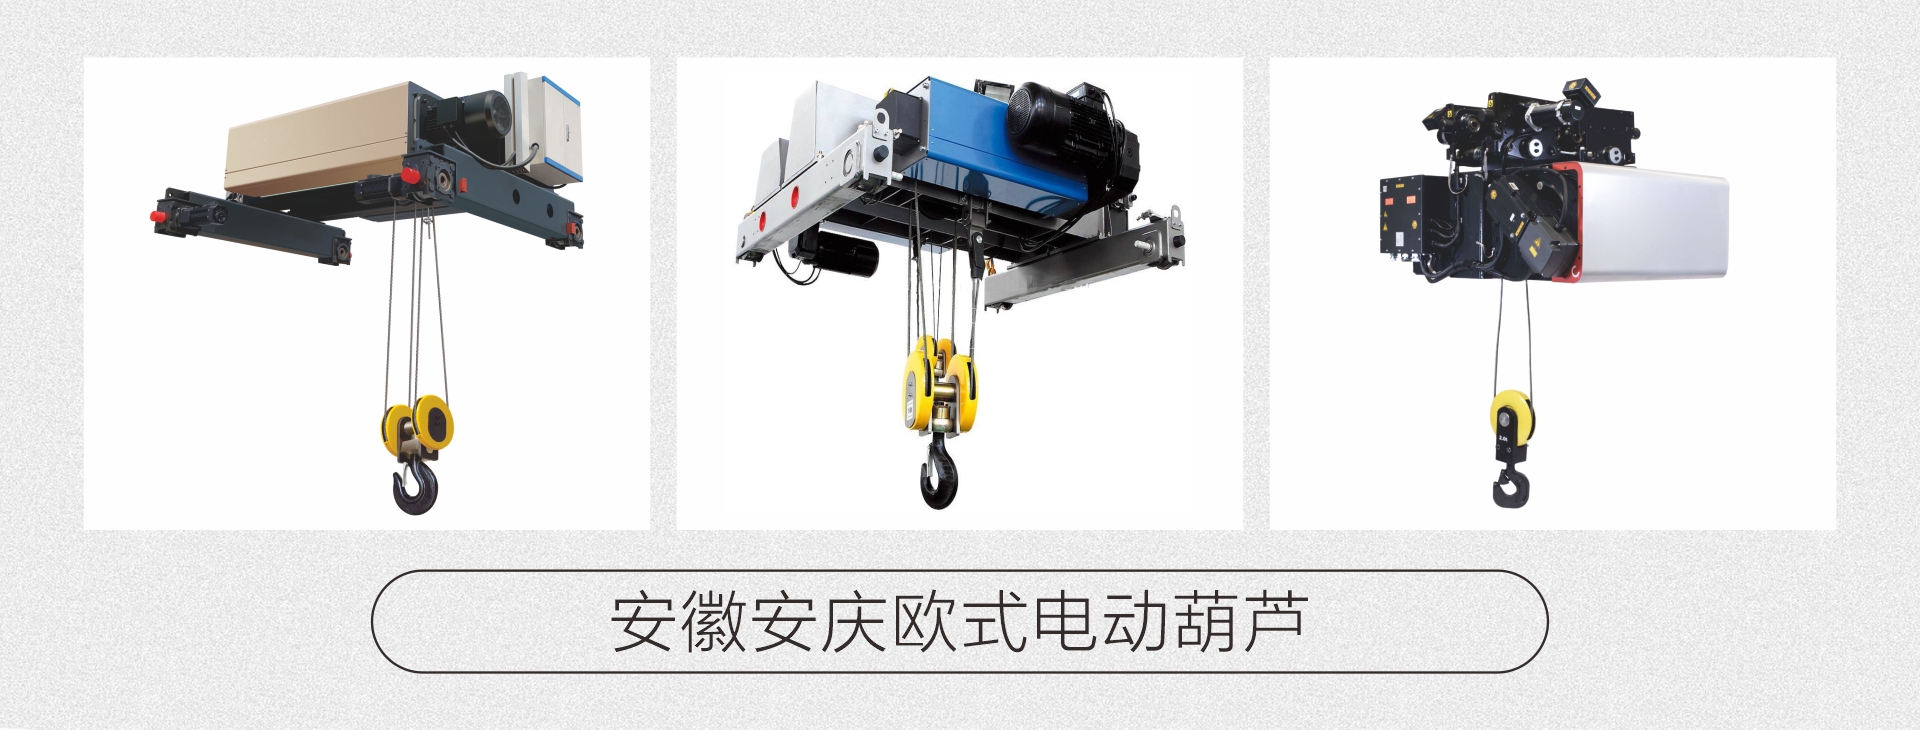 安庆专业制造起重设备-安徽安庆起重机